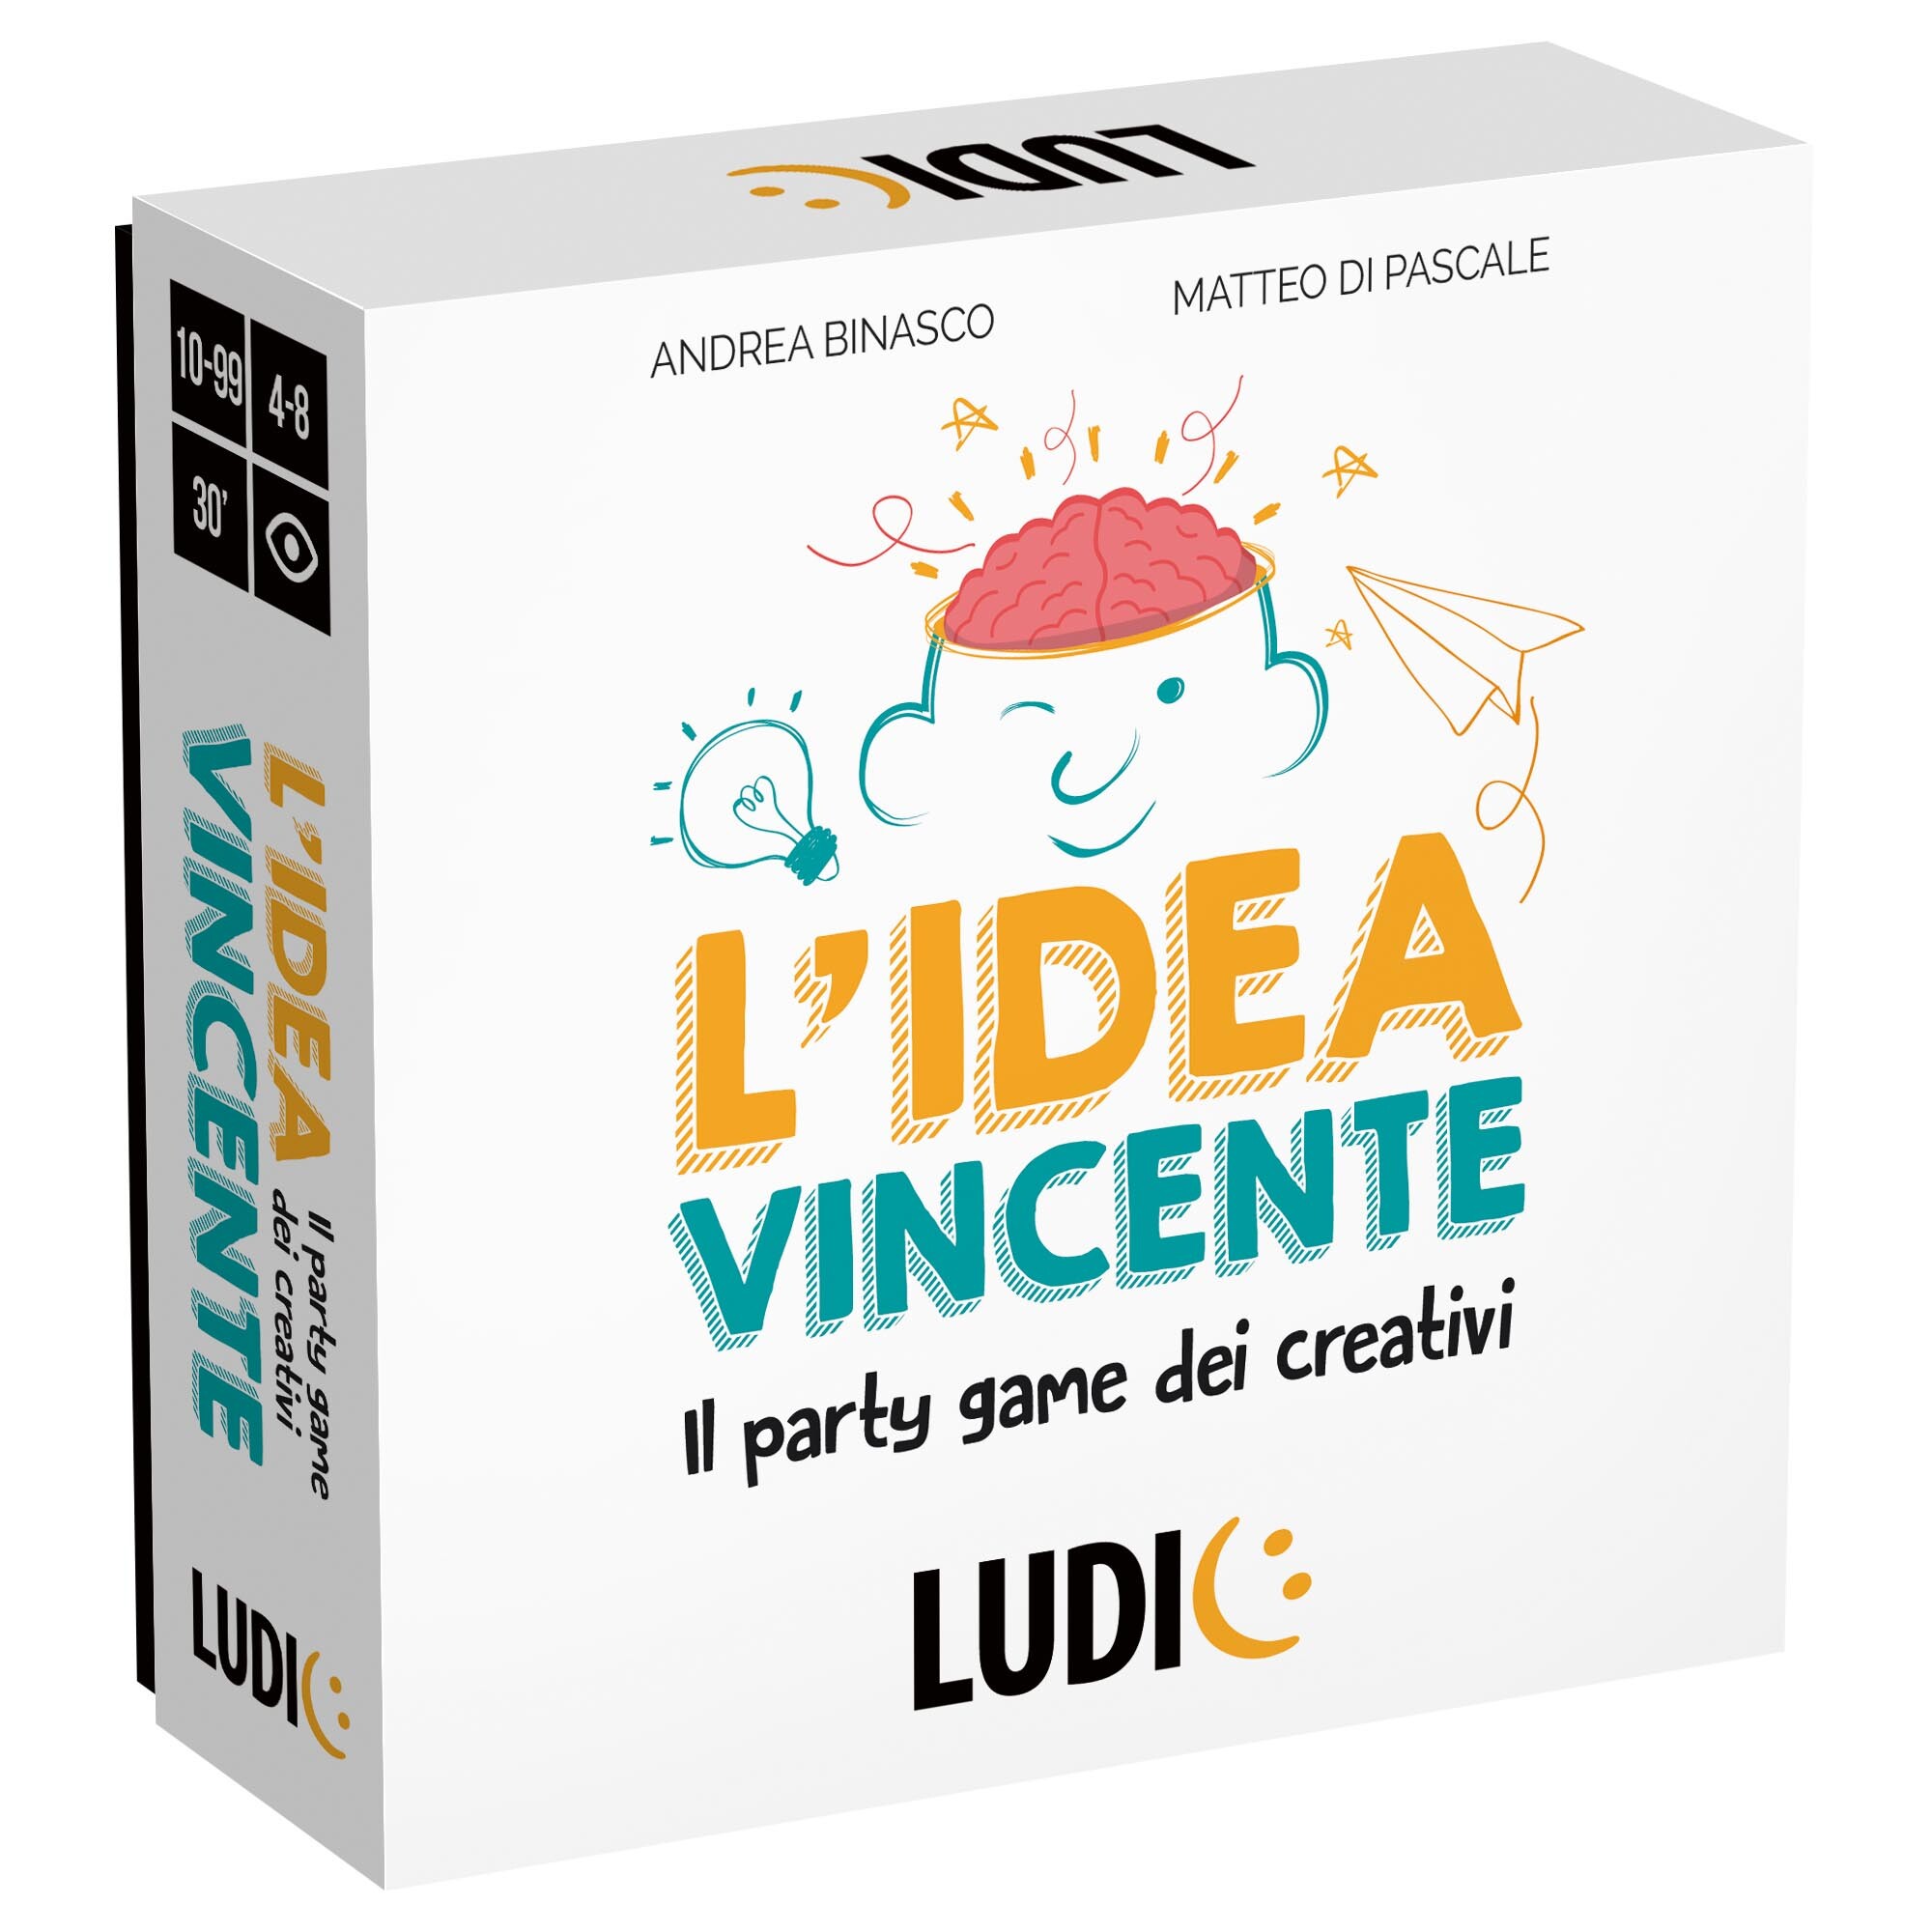 L'idea vincente. il party game dei creativi.	made in italy - LUDIC